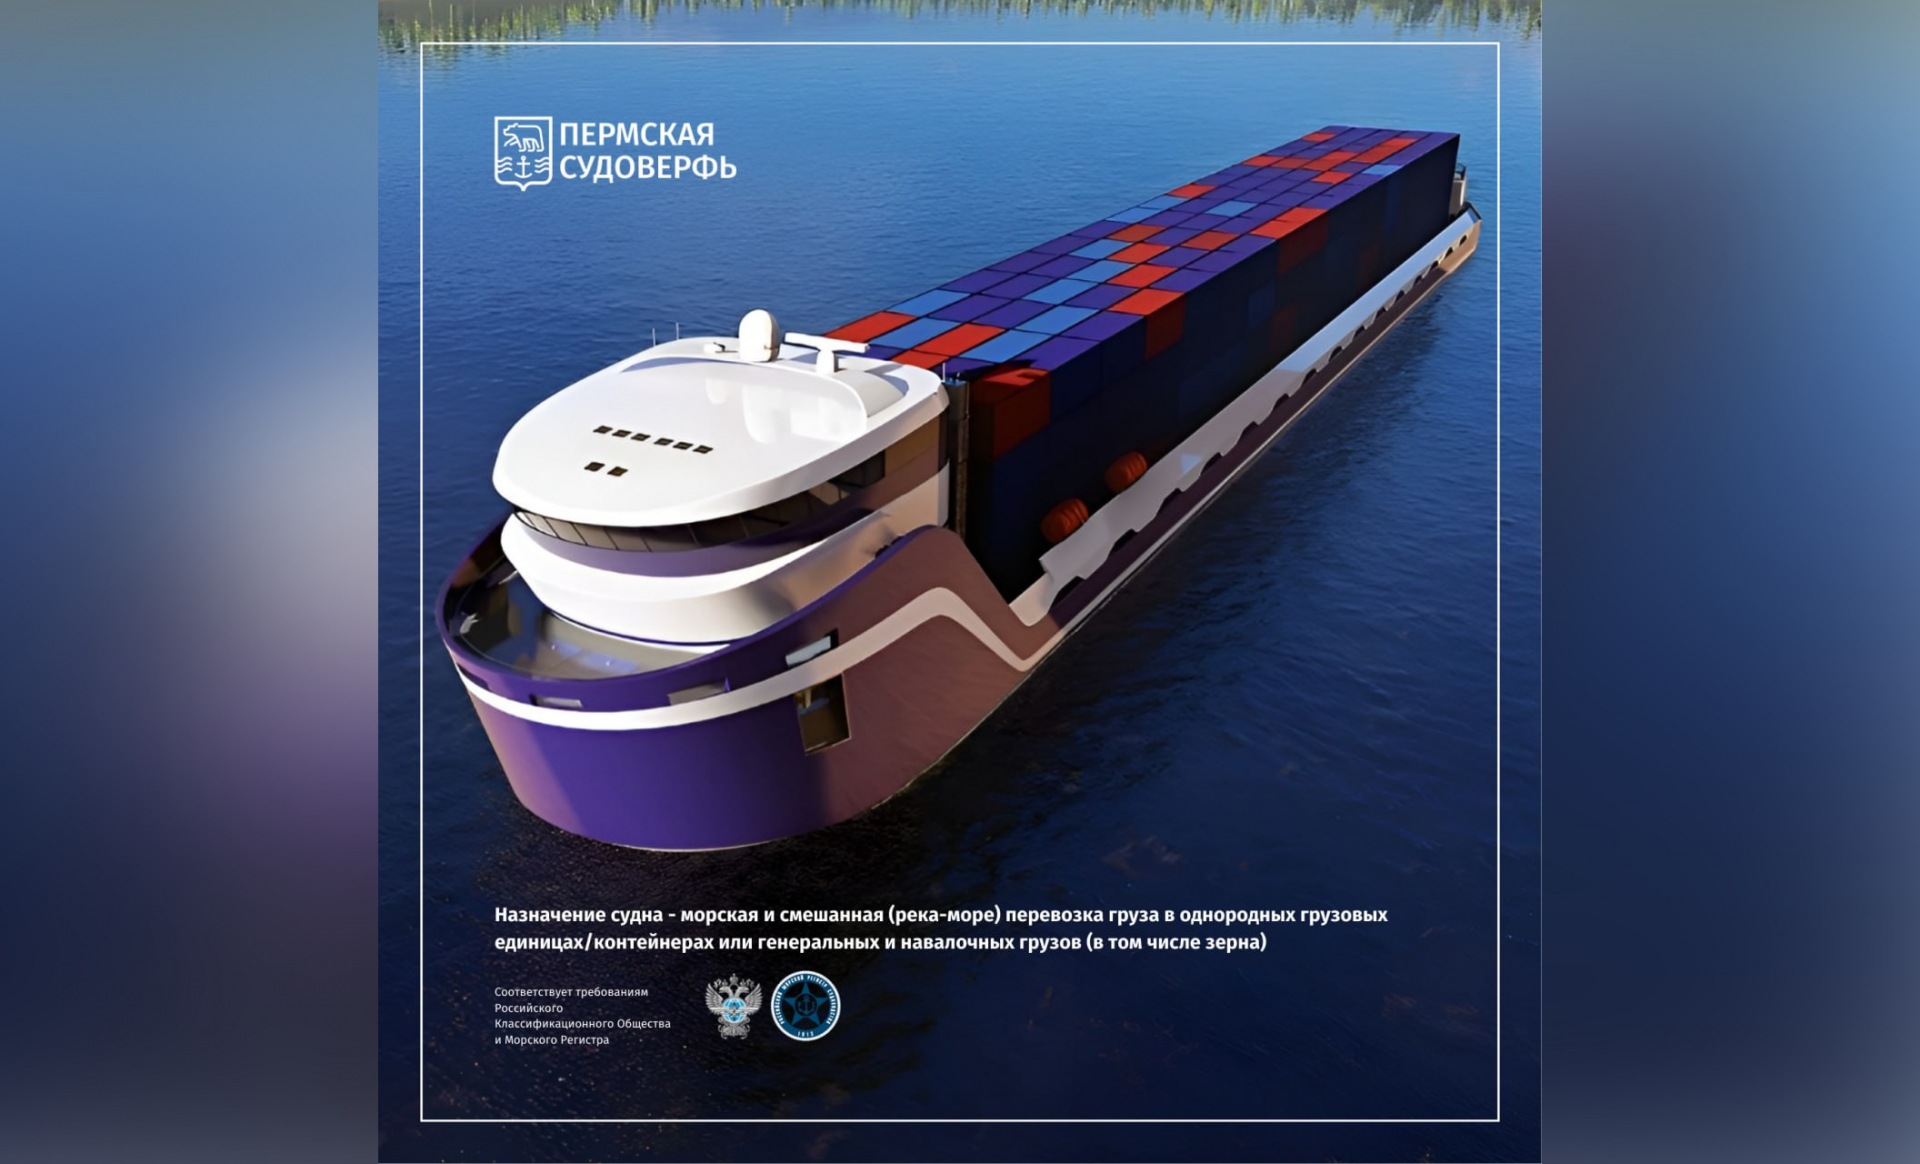 Пермская судоверфь представила проект нового грузового судна «Вишера» 